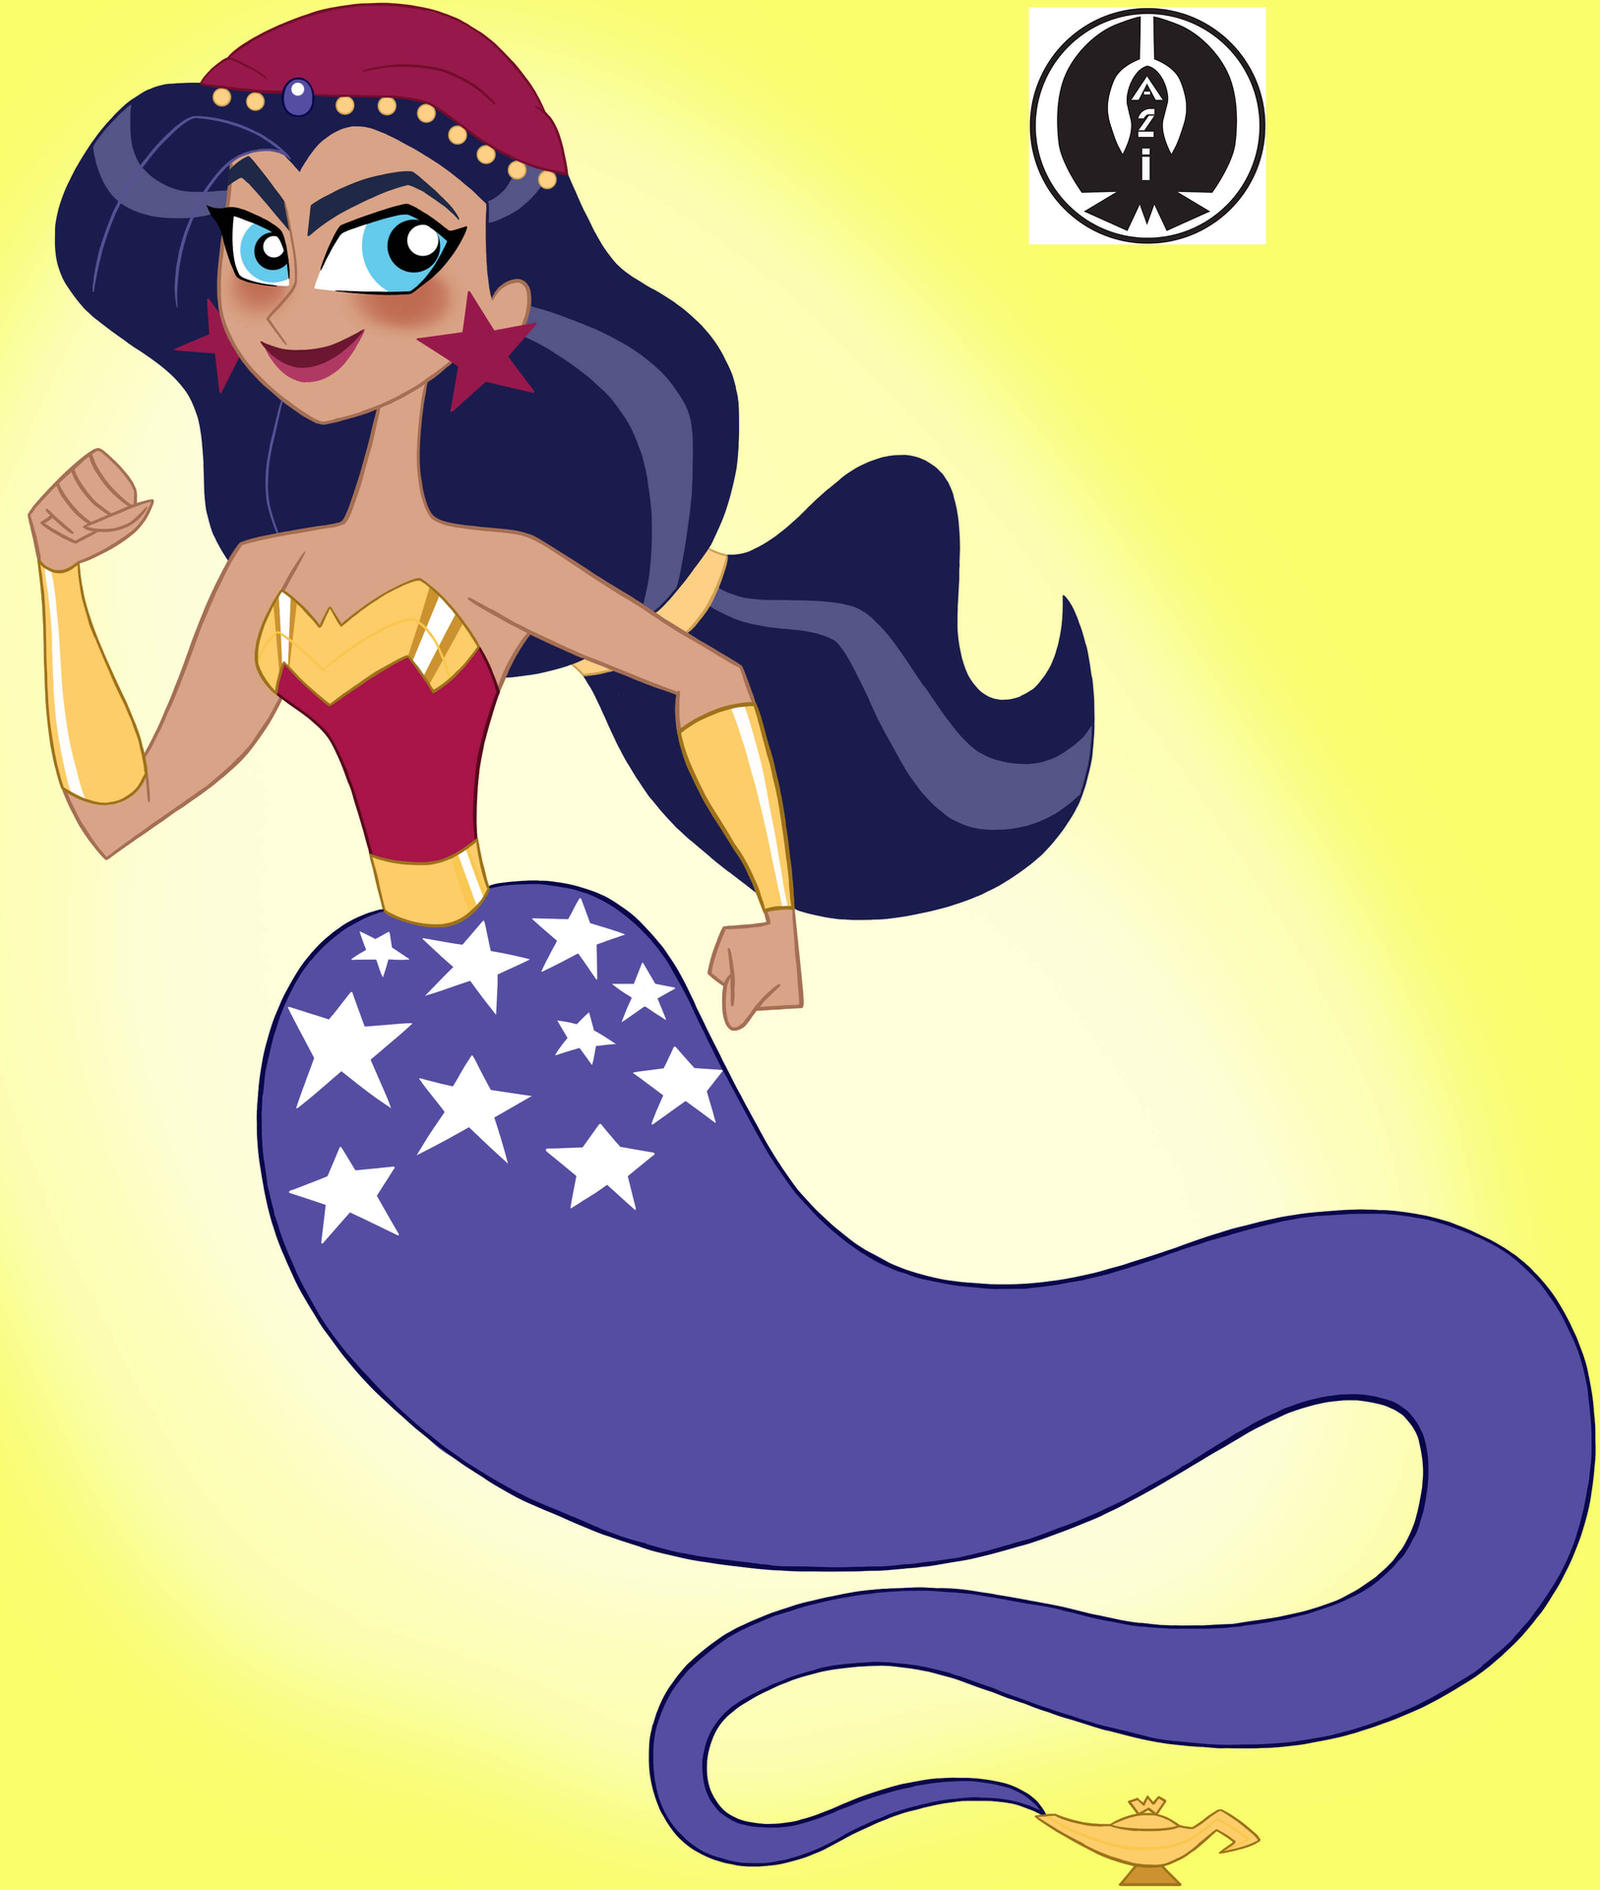 Genie Wonder Woman by Aliencon on DeviantArt